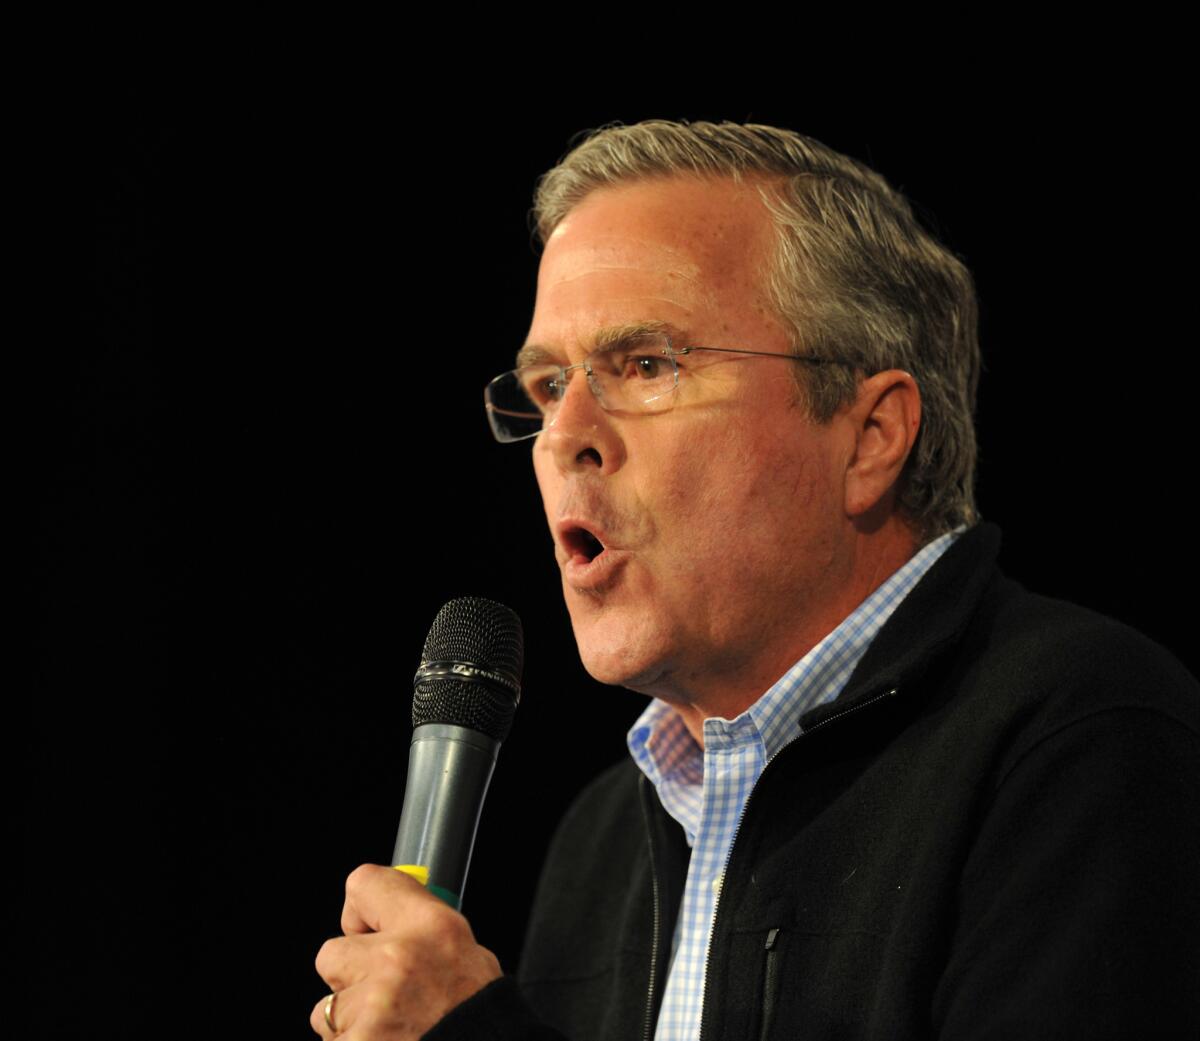 Republican presidential candidate Jeb Bush campaigns in Iowa on Saturday.